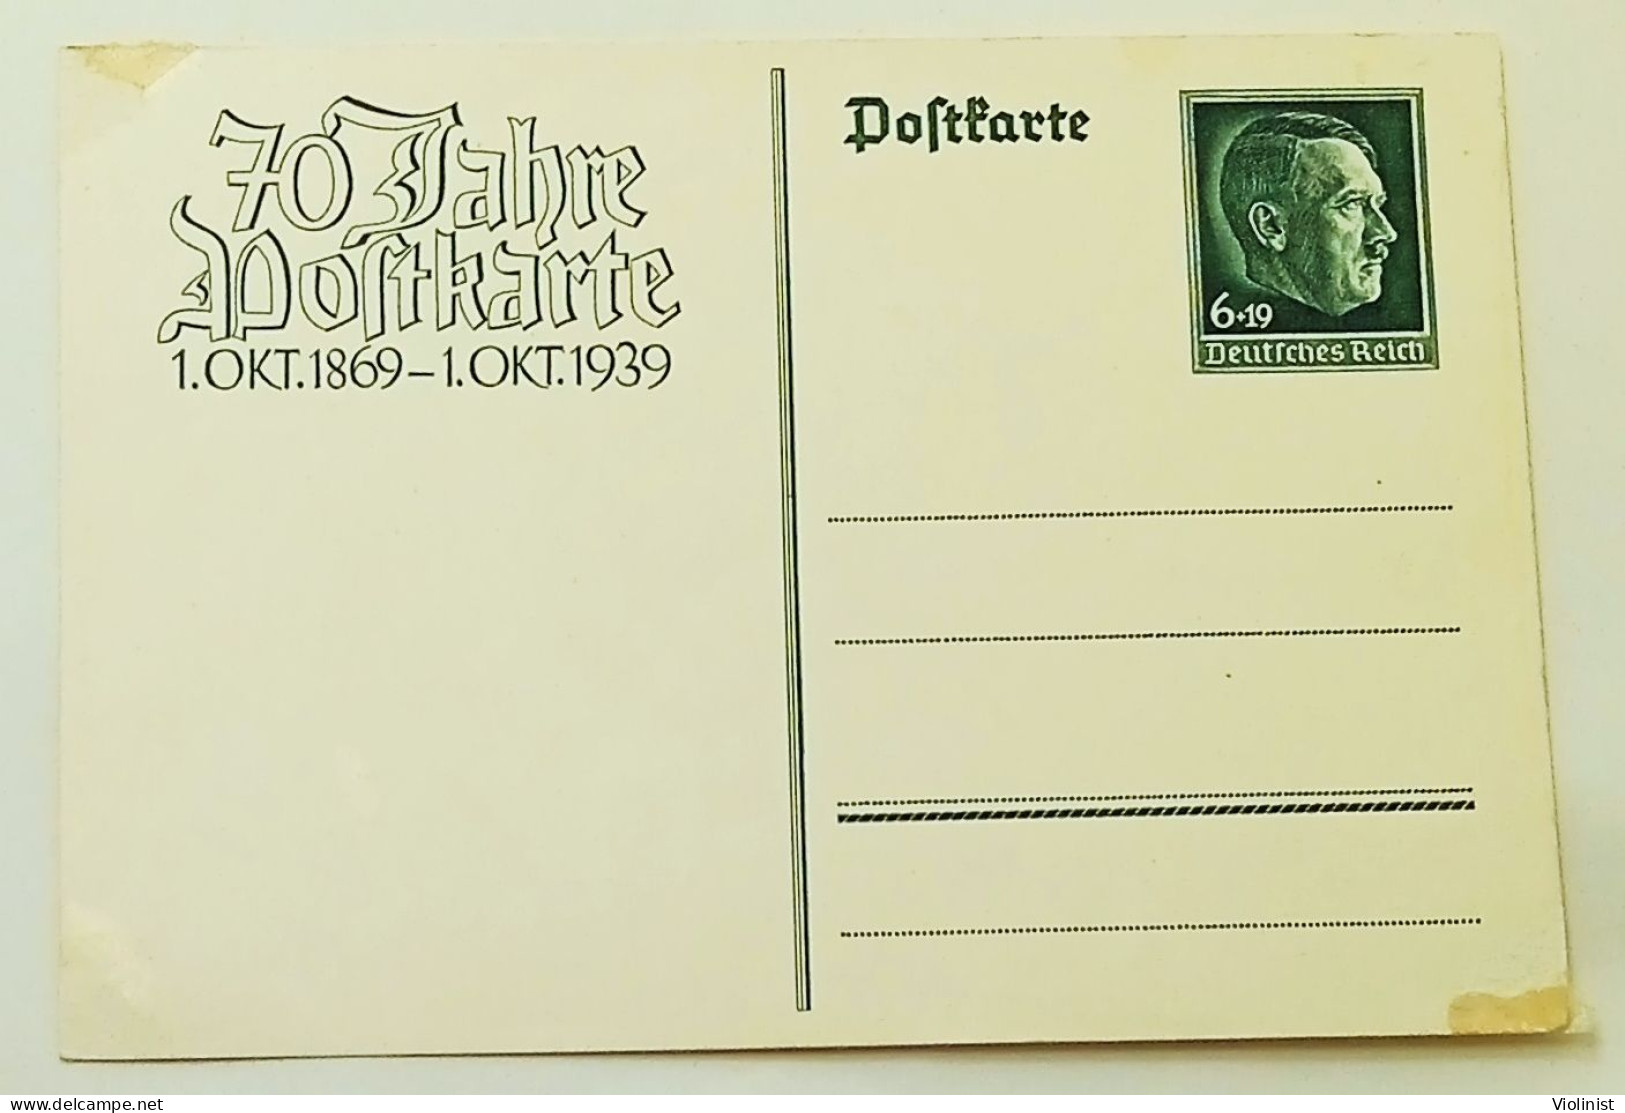 Deutsches Reich-70 Jahre Postkarte 1.OKT.1869.-1-OKT.1939. - Oficial